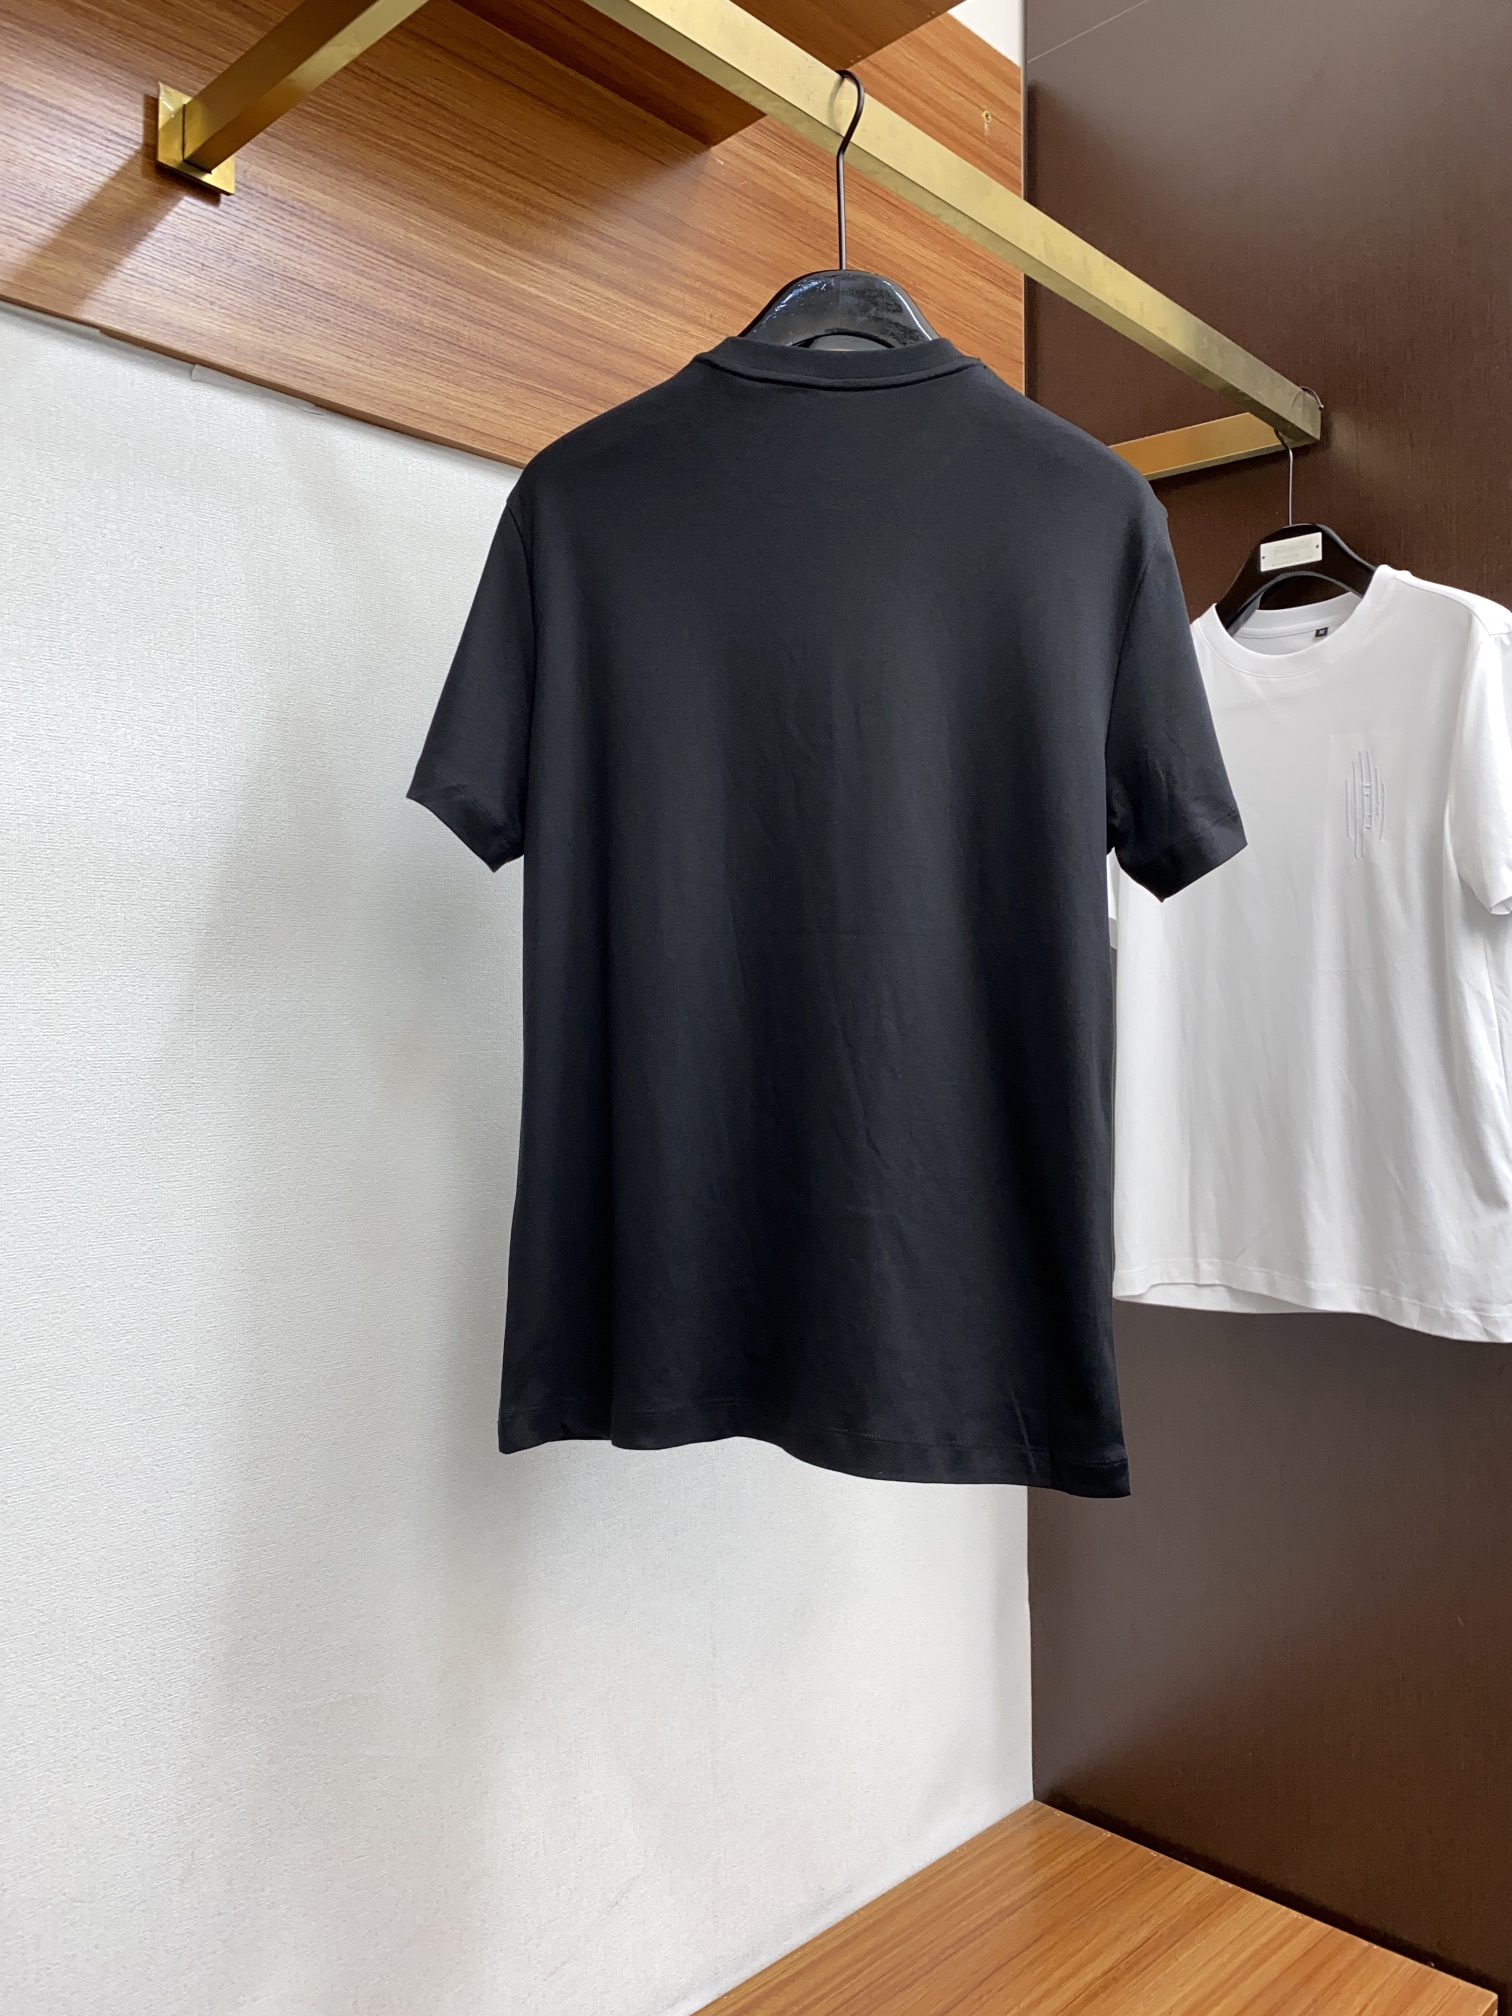 フェンディ メンズ t シャツ偽物 トップス 綿100% プリント 短袖 ゆったり シンプル 柔らかい メンズ ブラック_8